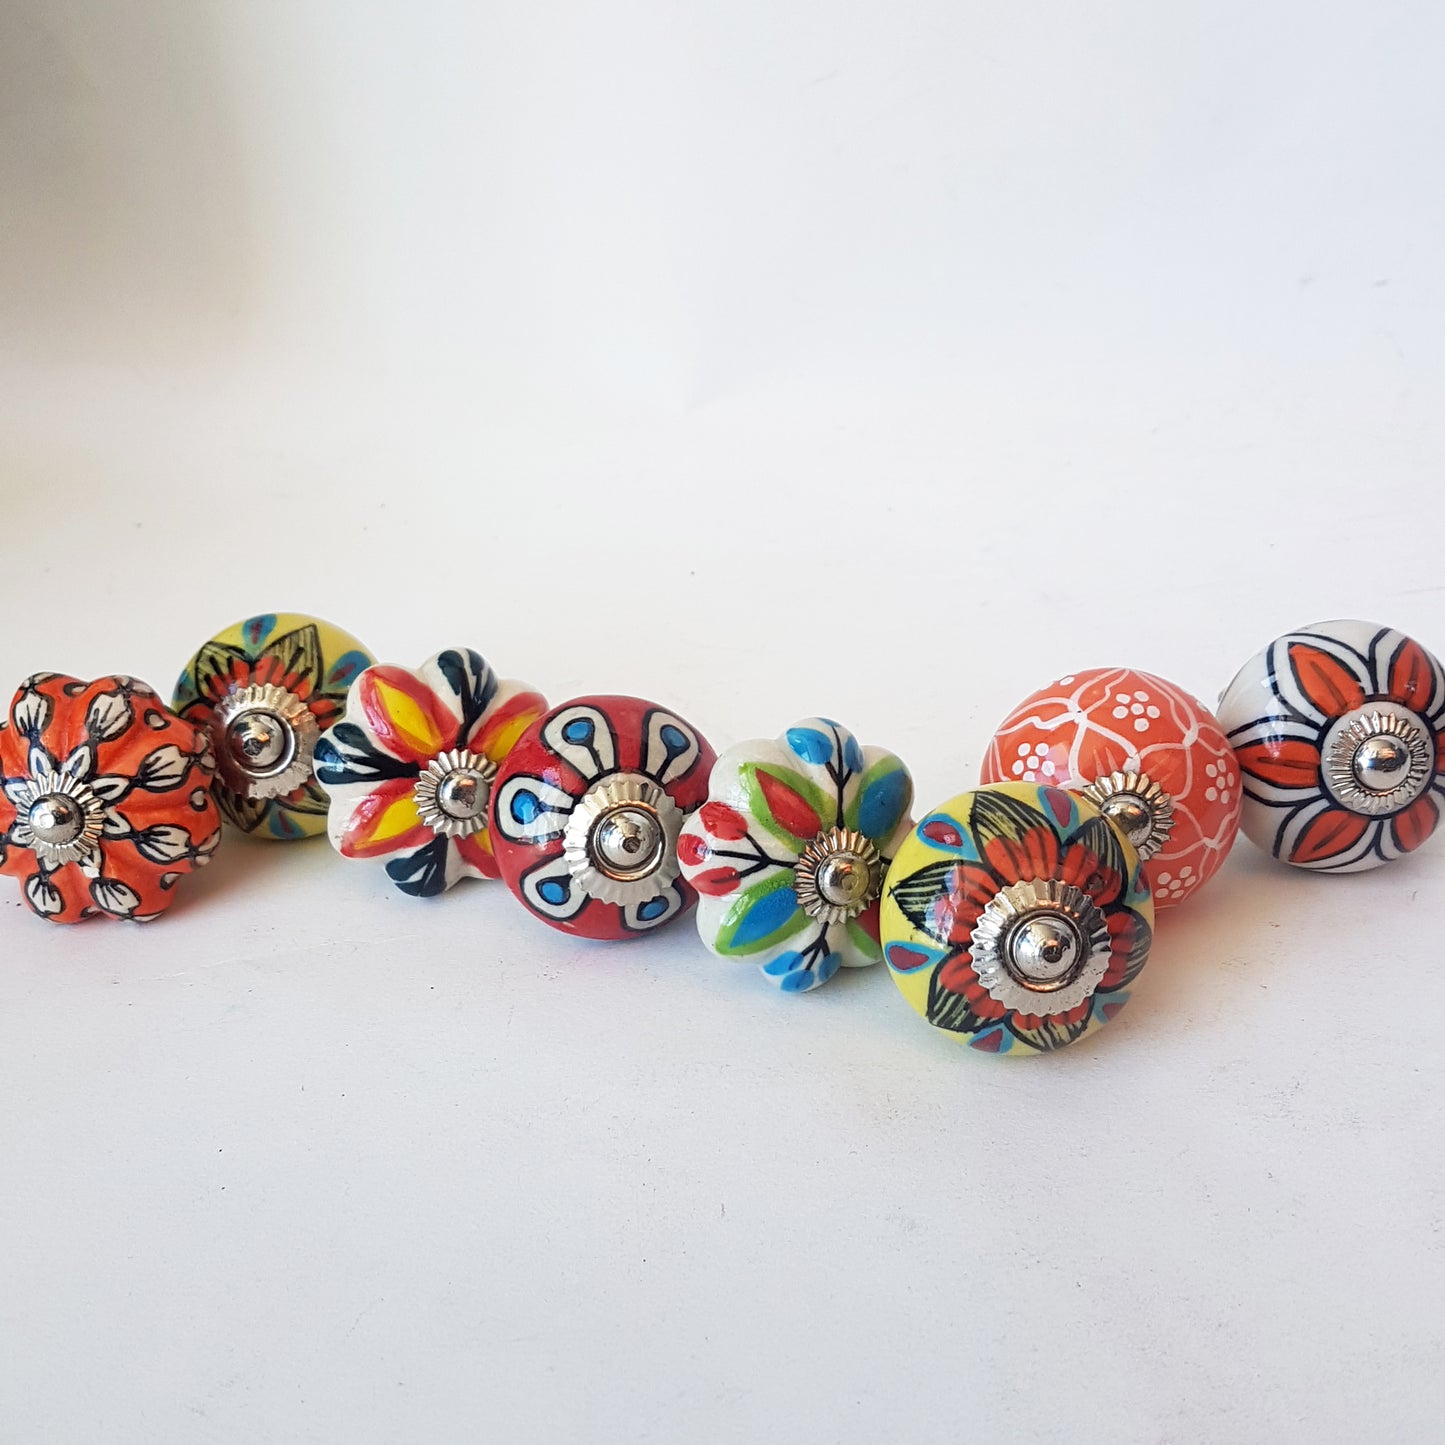 Collection Tropicale de 8 poignées de boutons peintes à la main pour armoires et placards, tiroirs de commode. Motifs floraux vibrants exclusifs.